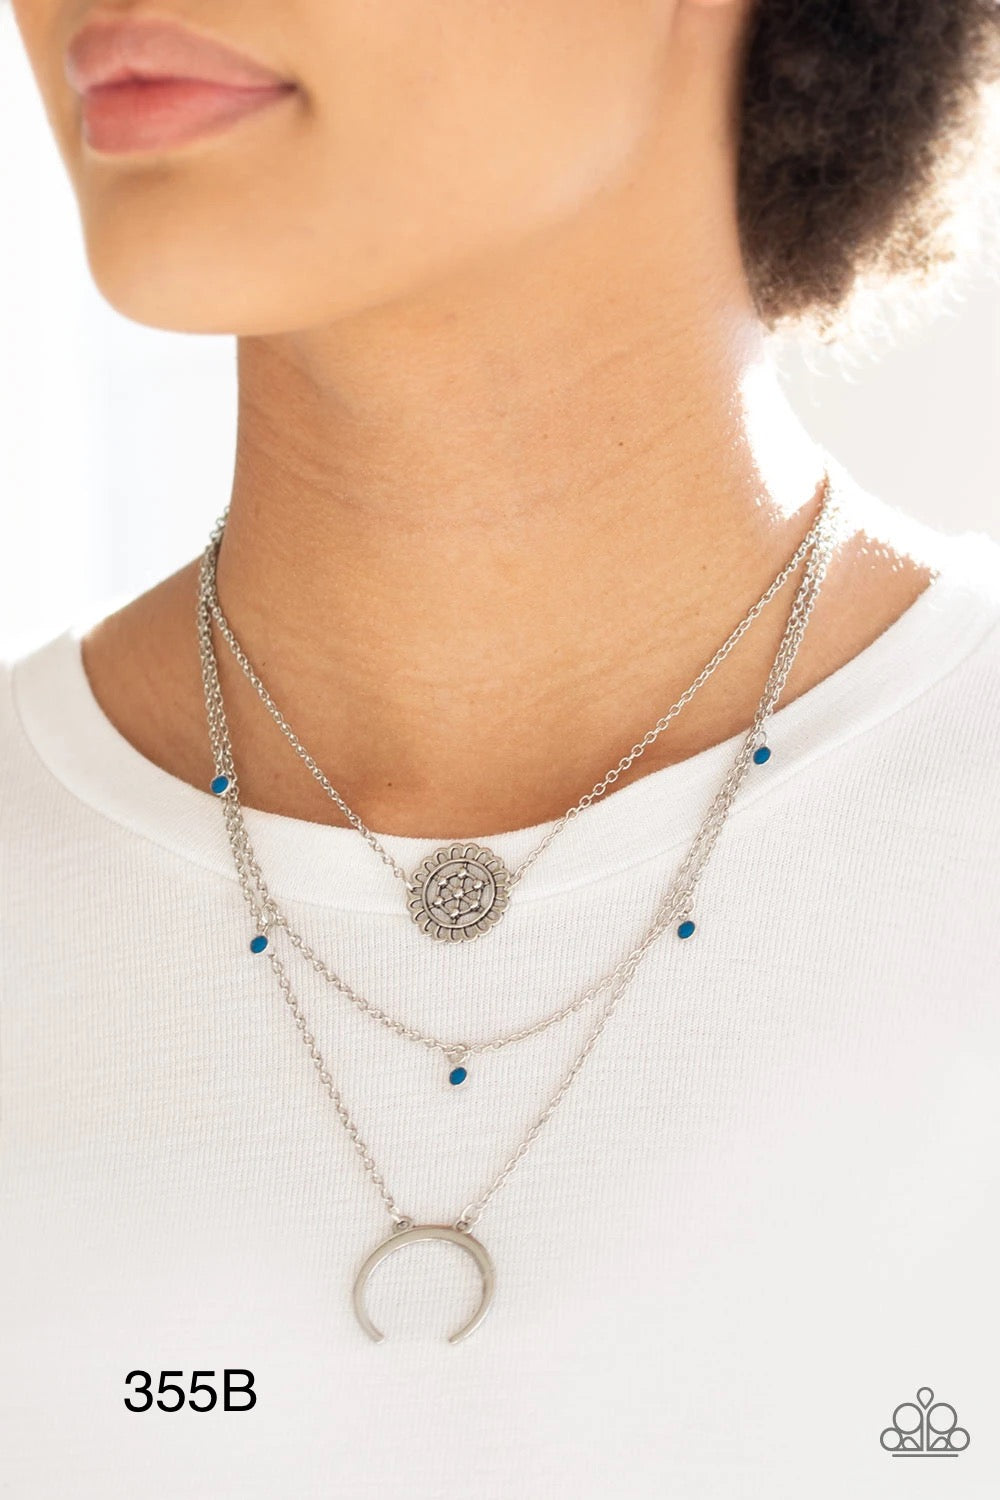 Paparazzi “Lunar Lotus” Blue Necklace Earring Set - Cindys Bling Boutique